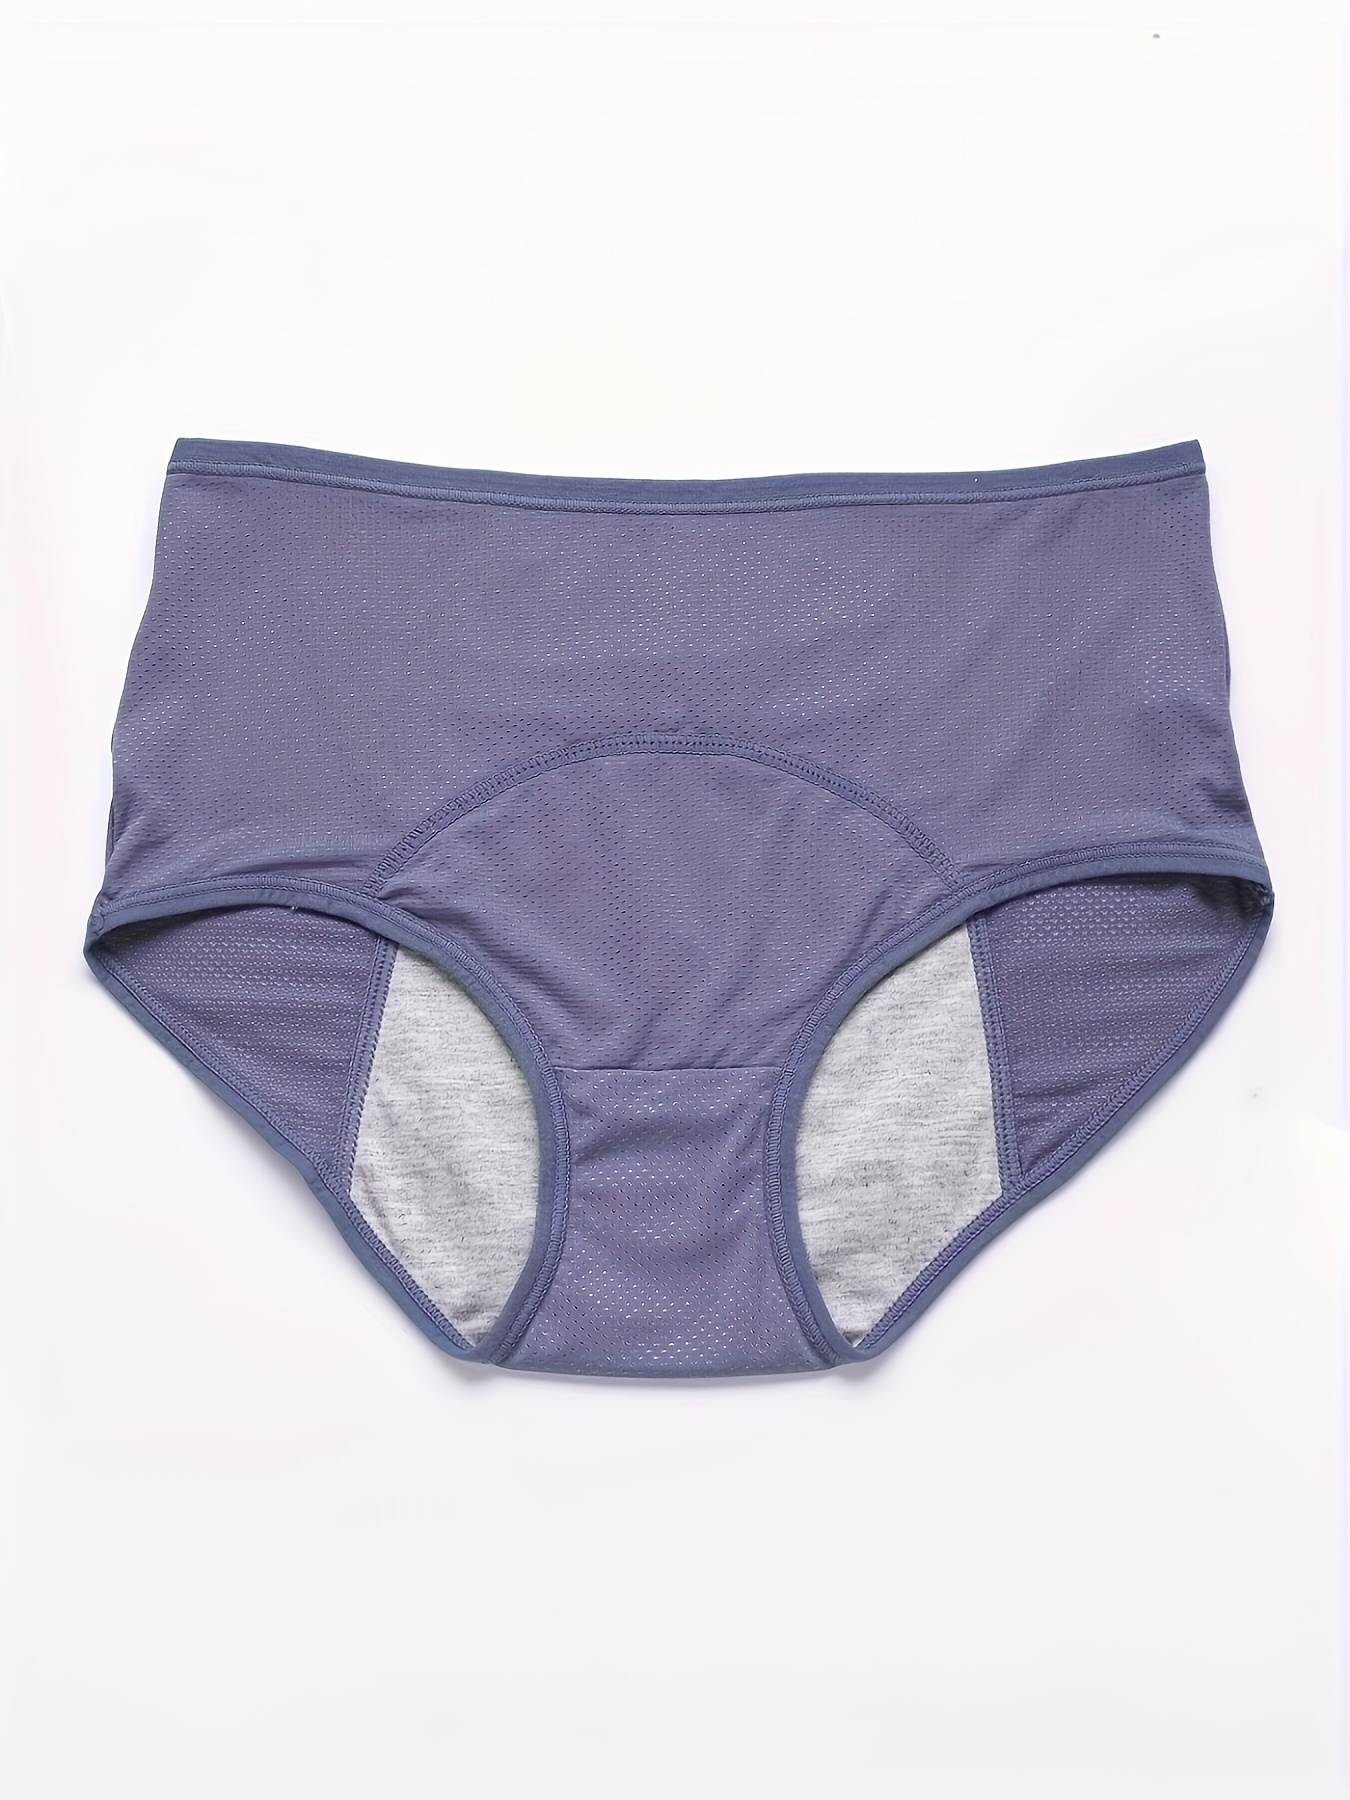 Underwear Women High Waist Leakproof Underwear For Women Plus Size Panties  Leak Proof Menstrual Physiological Pants cotton underwear for women 